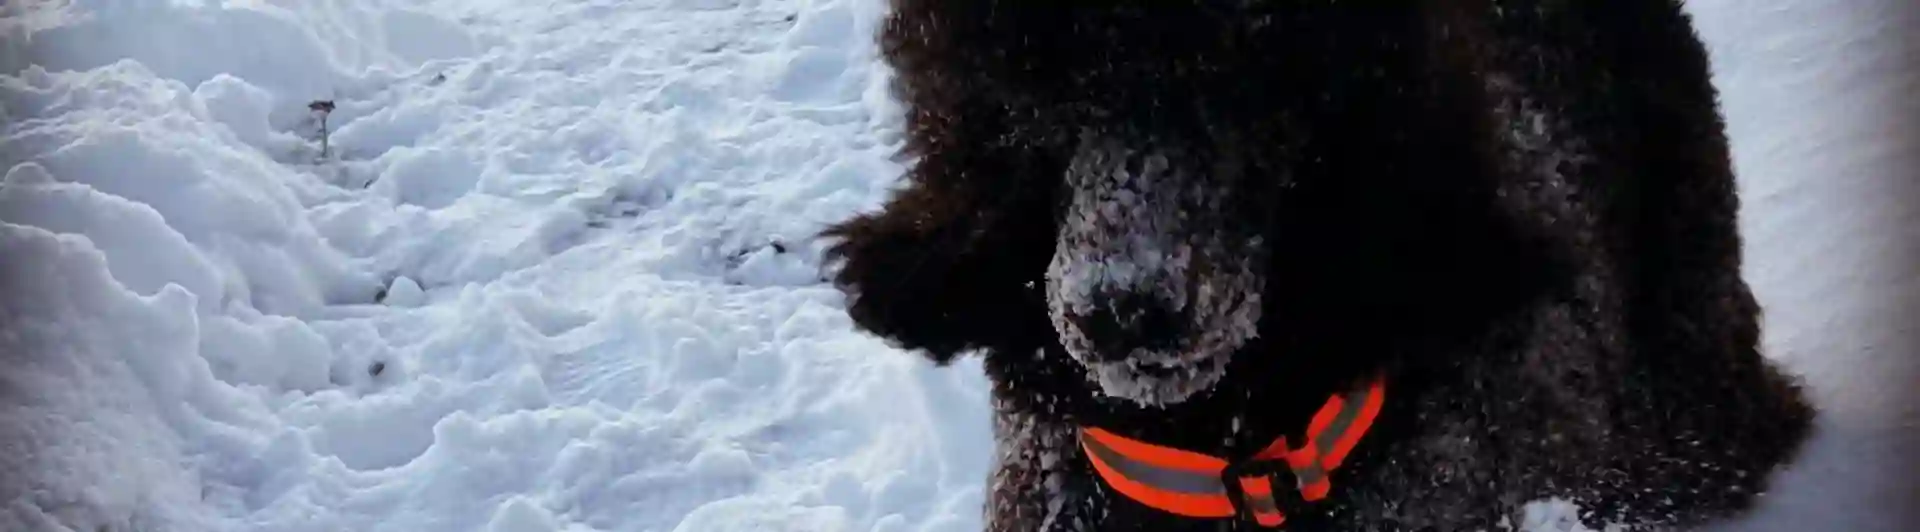 Hund hoppar i snö